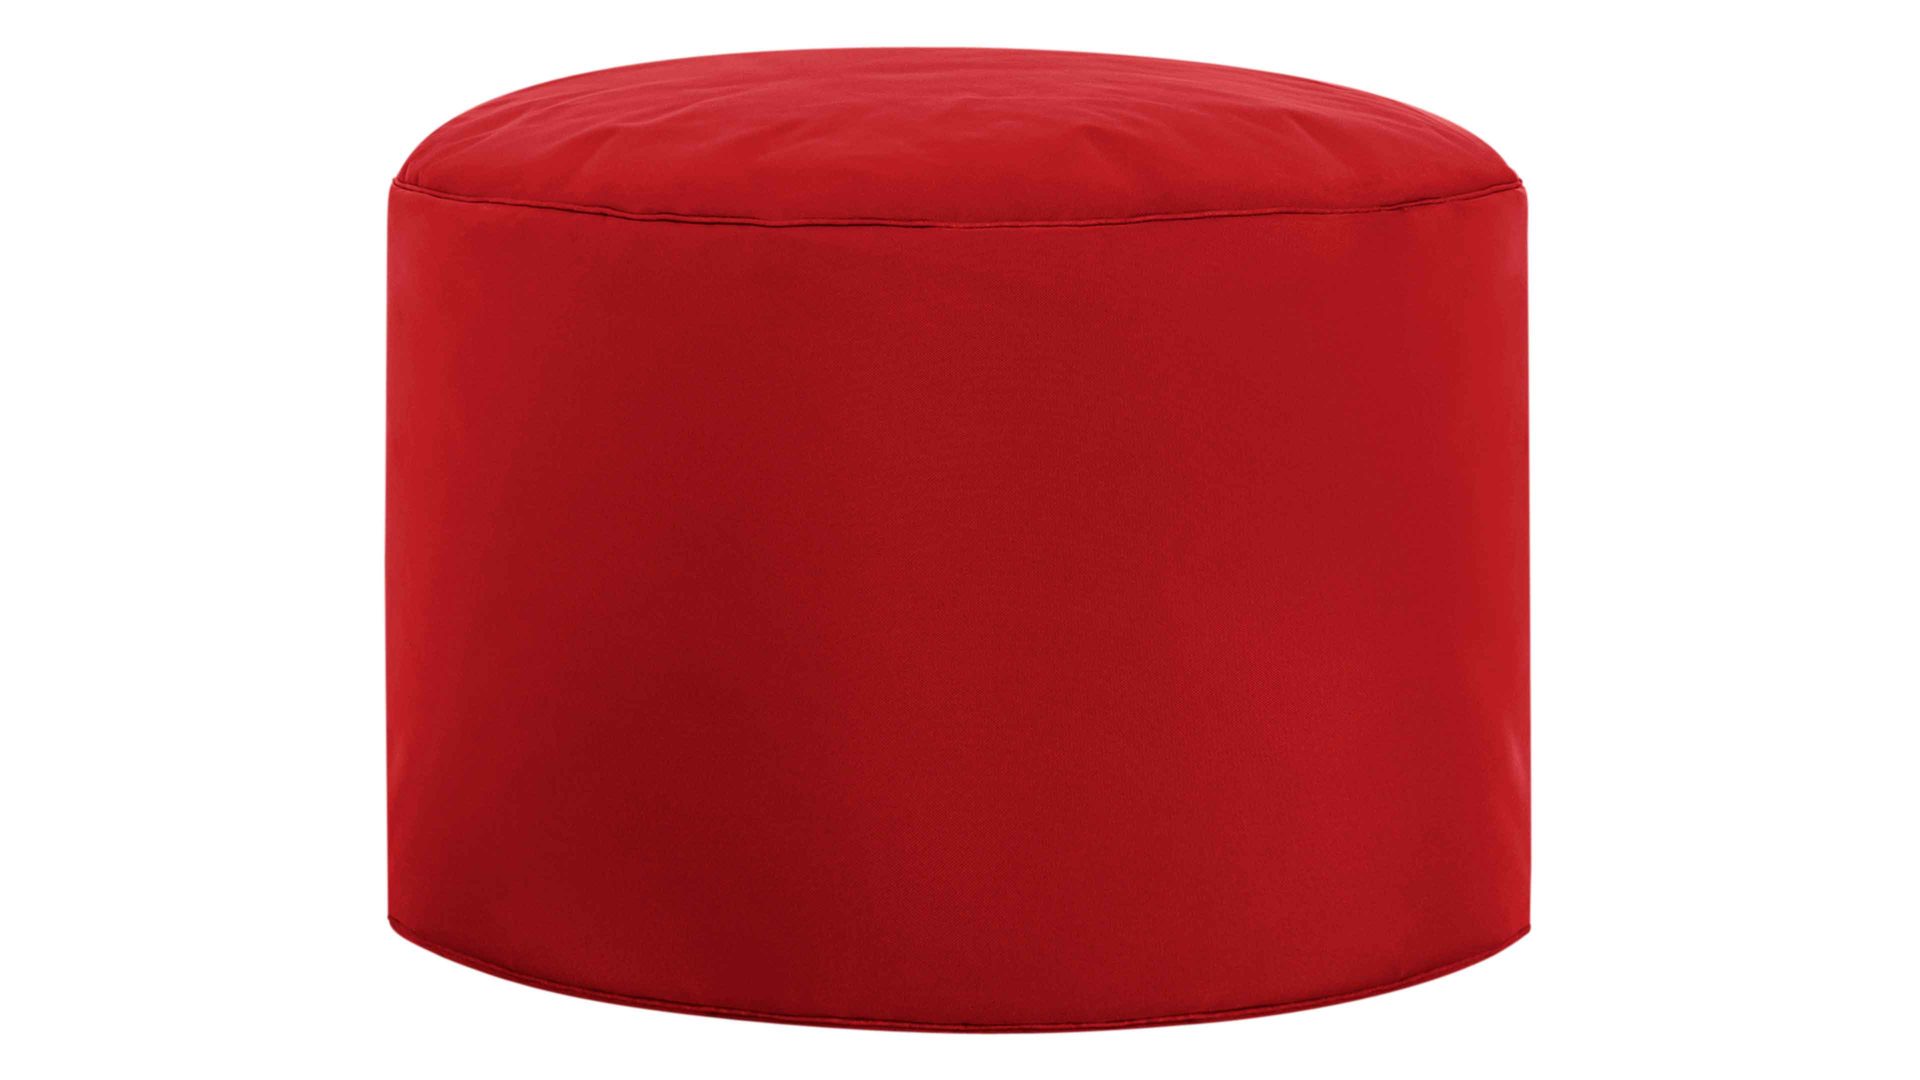 Sitzsack-Hocker Magma sitting point aus Kunstfaser in Rot SITTING POINT Sitzsack-Hocker dotcom scuba® als Gartenmöbel rote Kunstfaser – Durchmesser ca. 50 cm